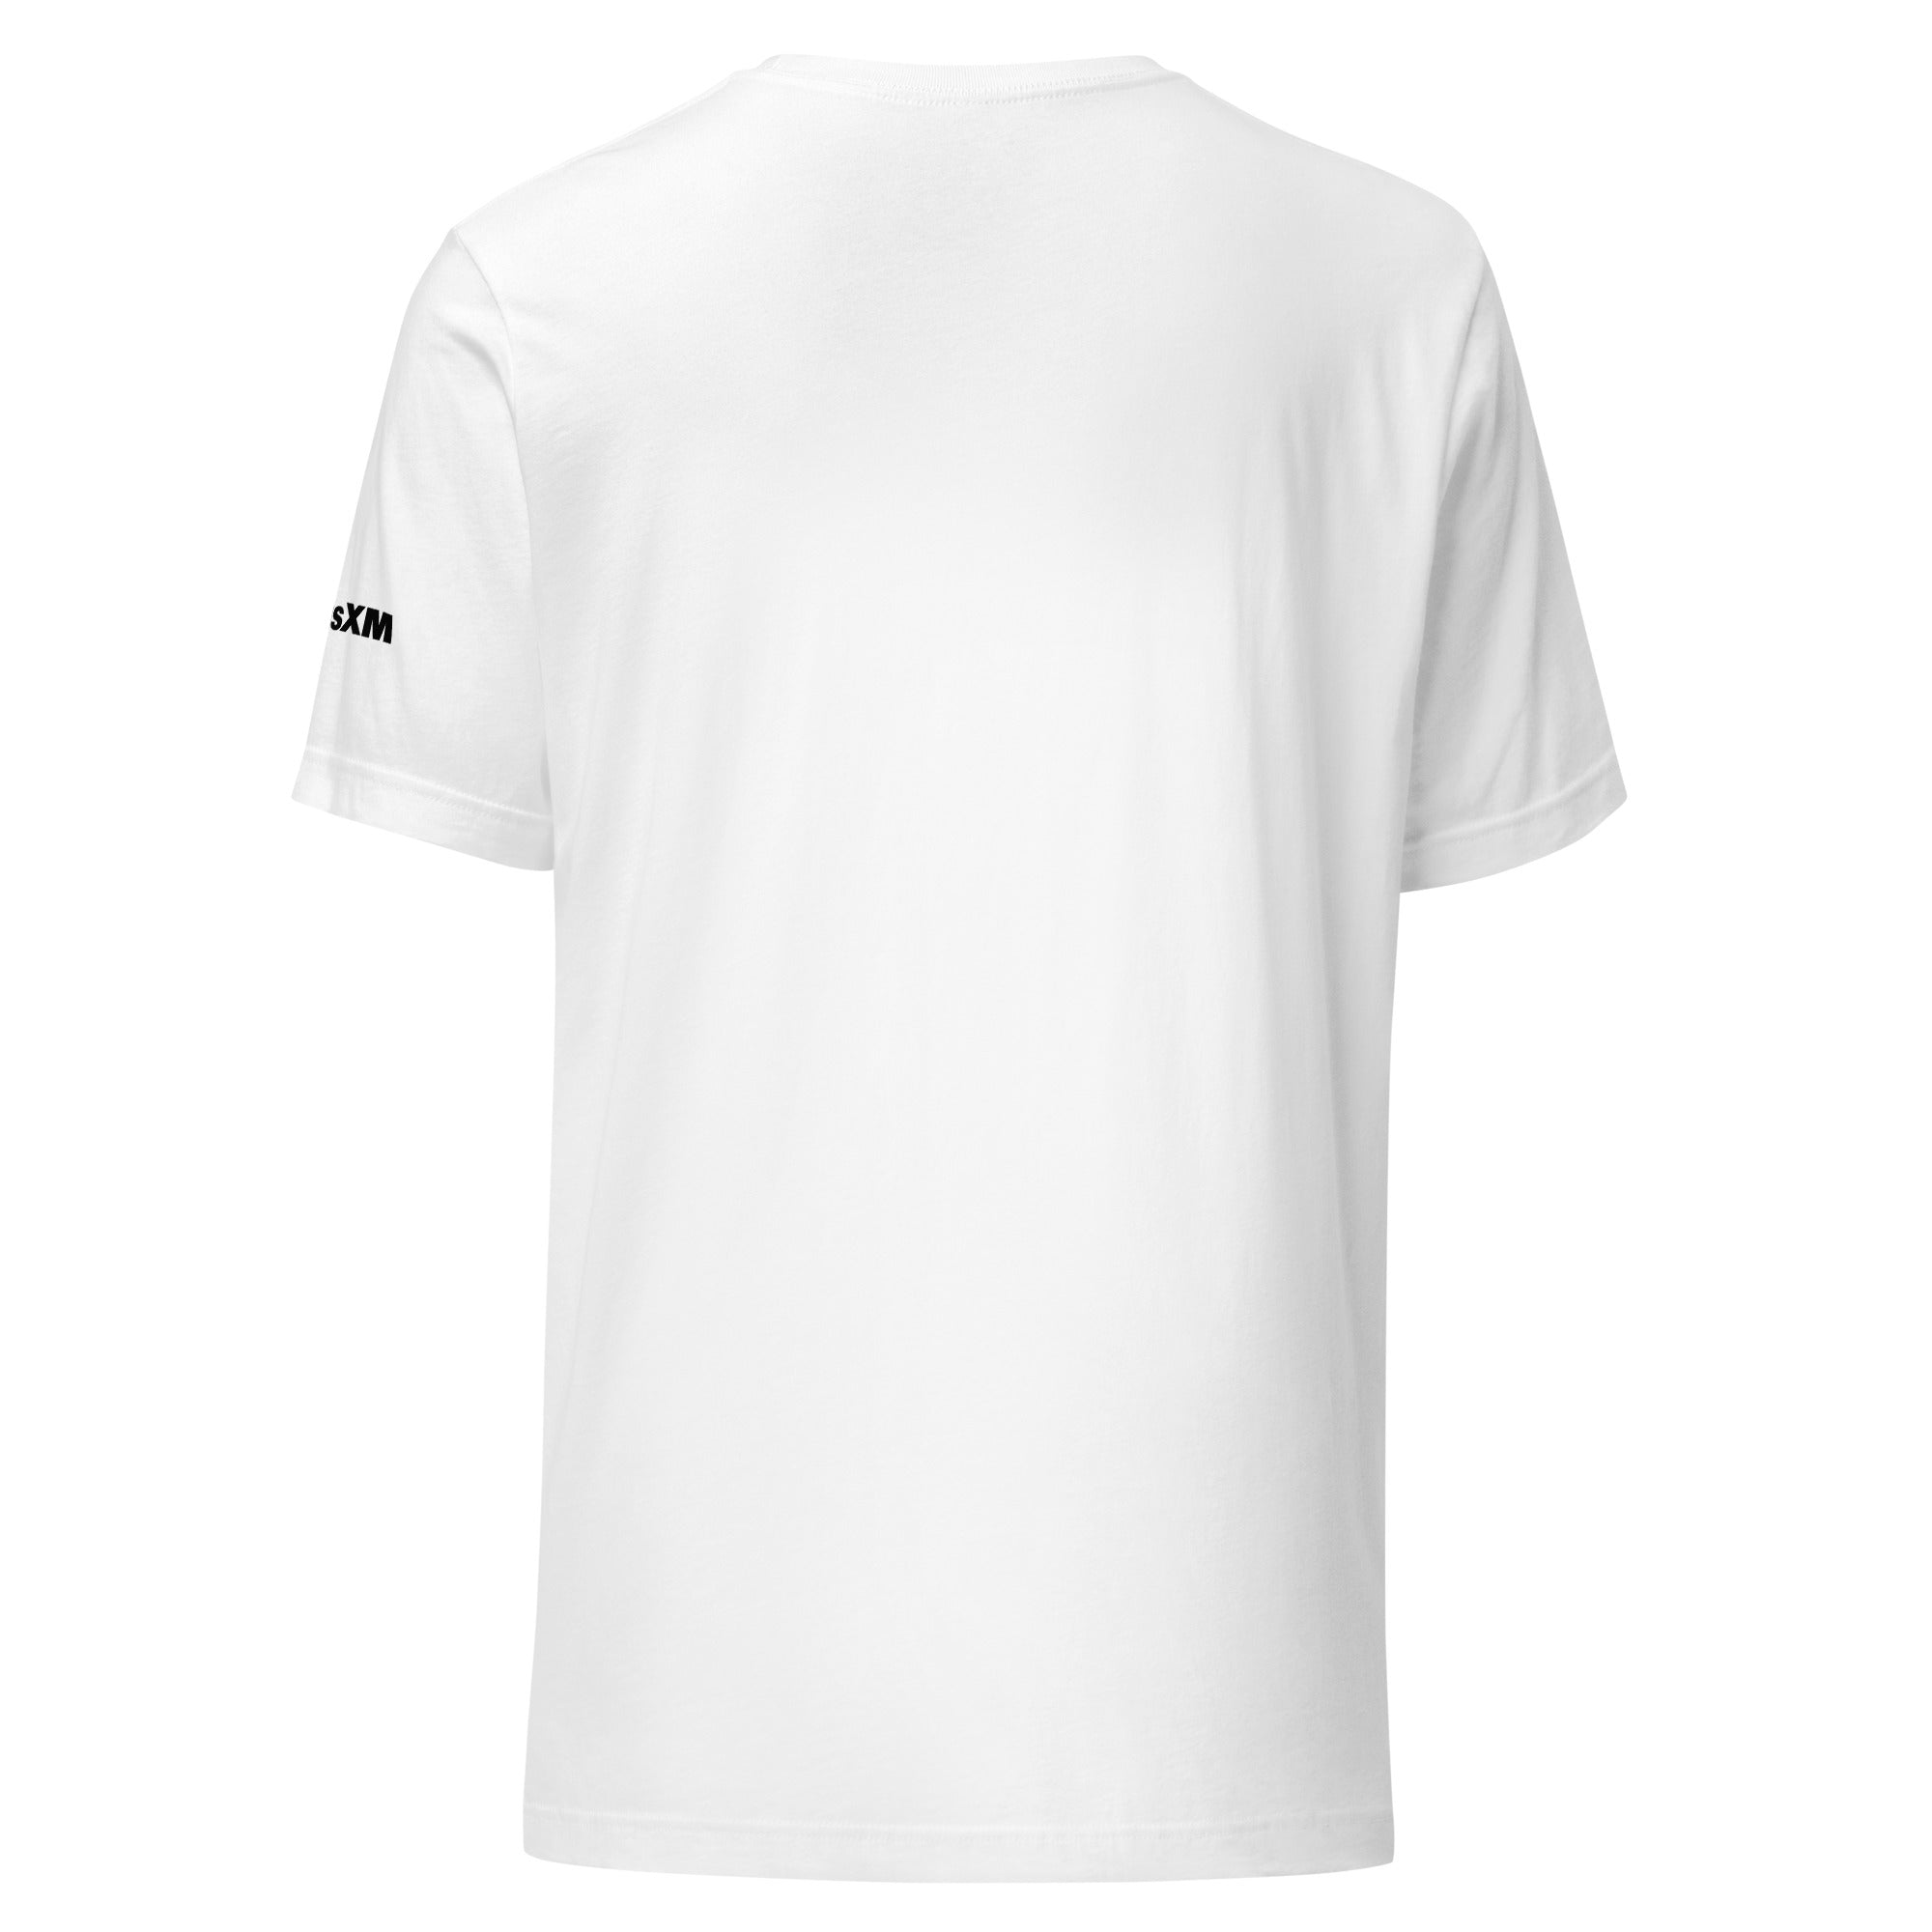 50s Gold: T-shirt (White)